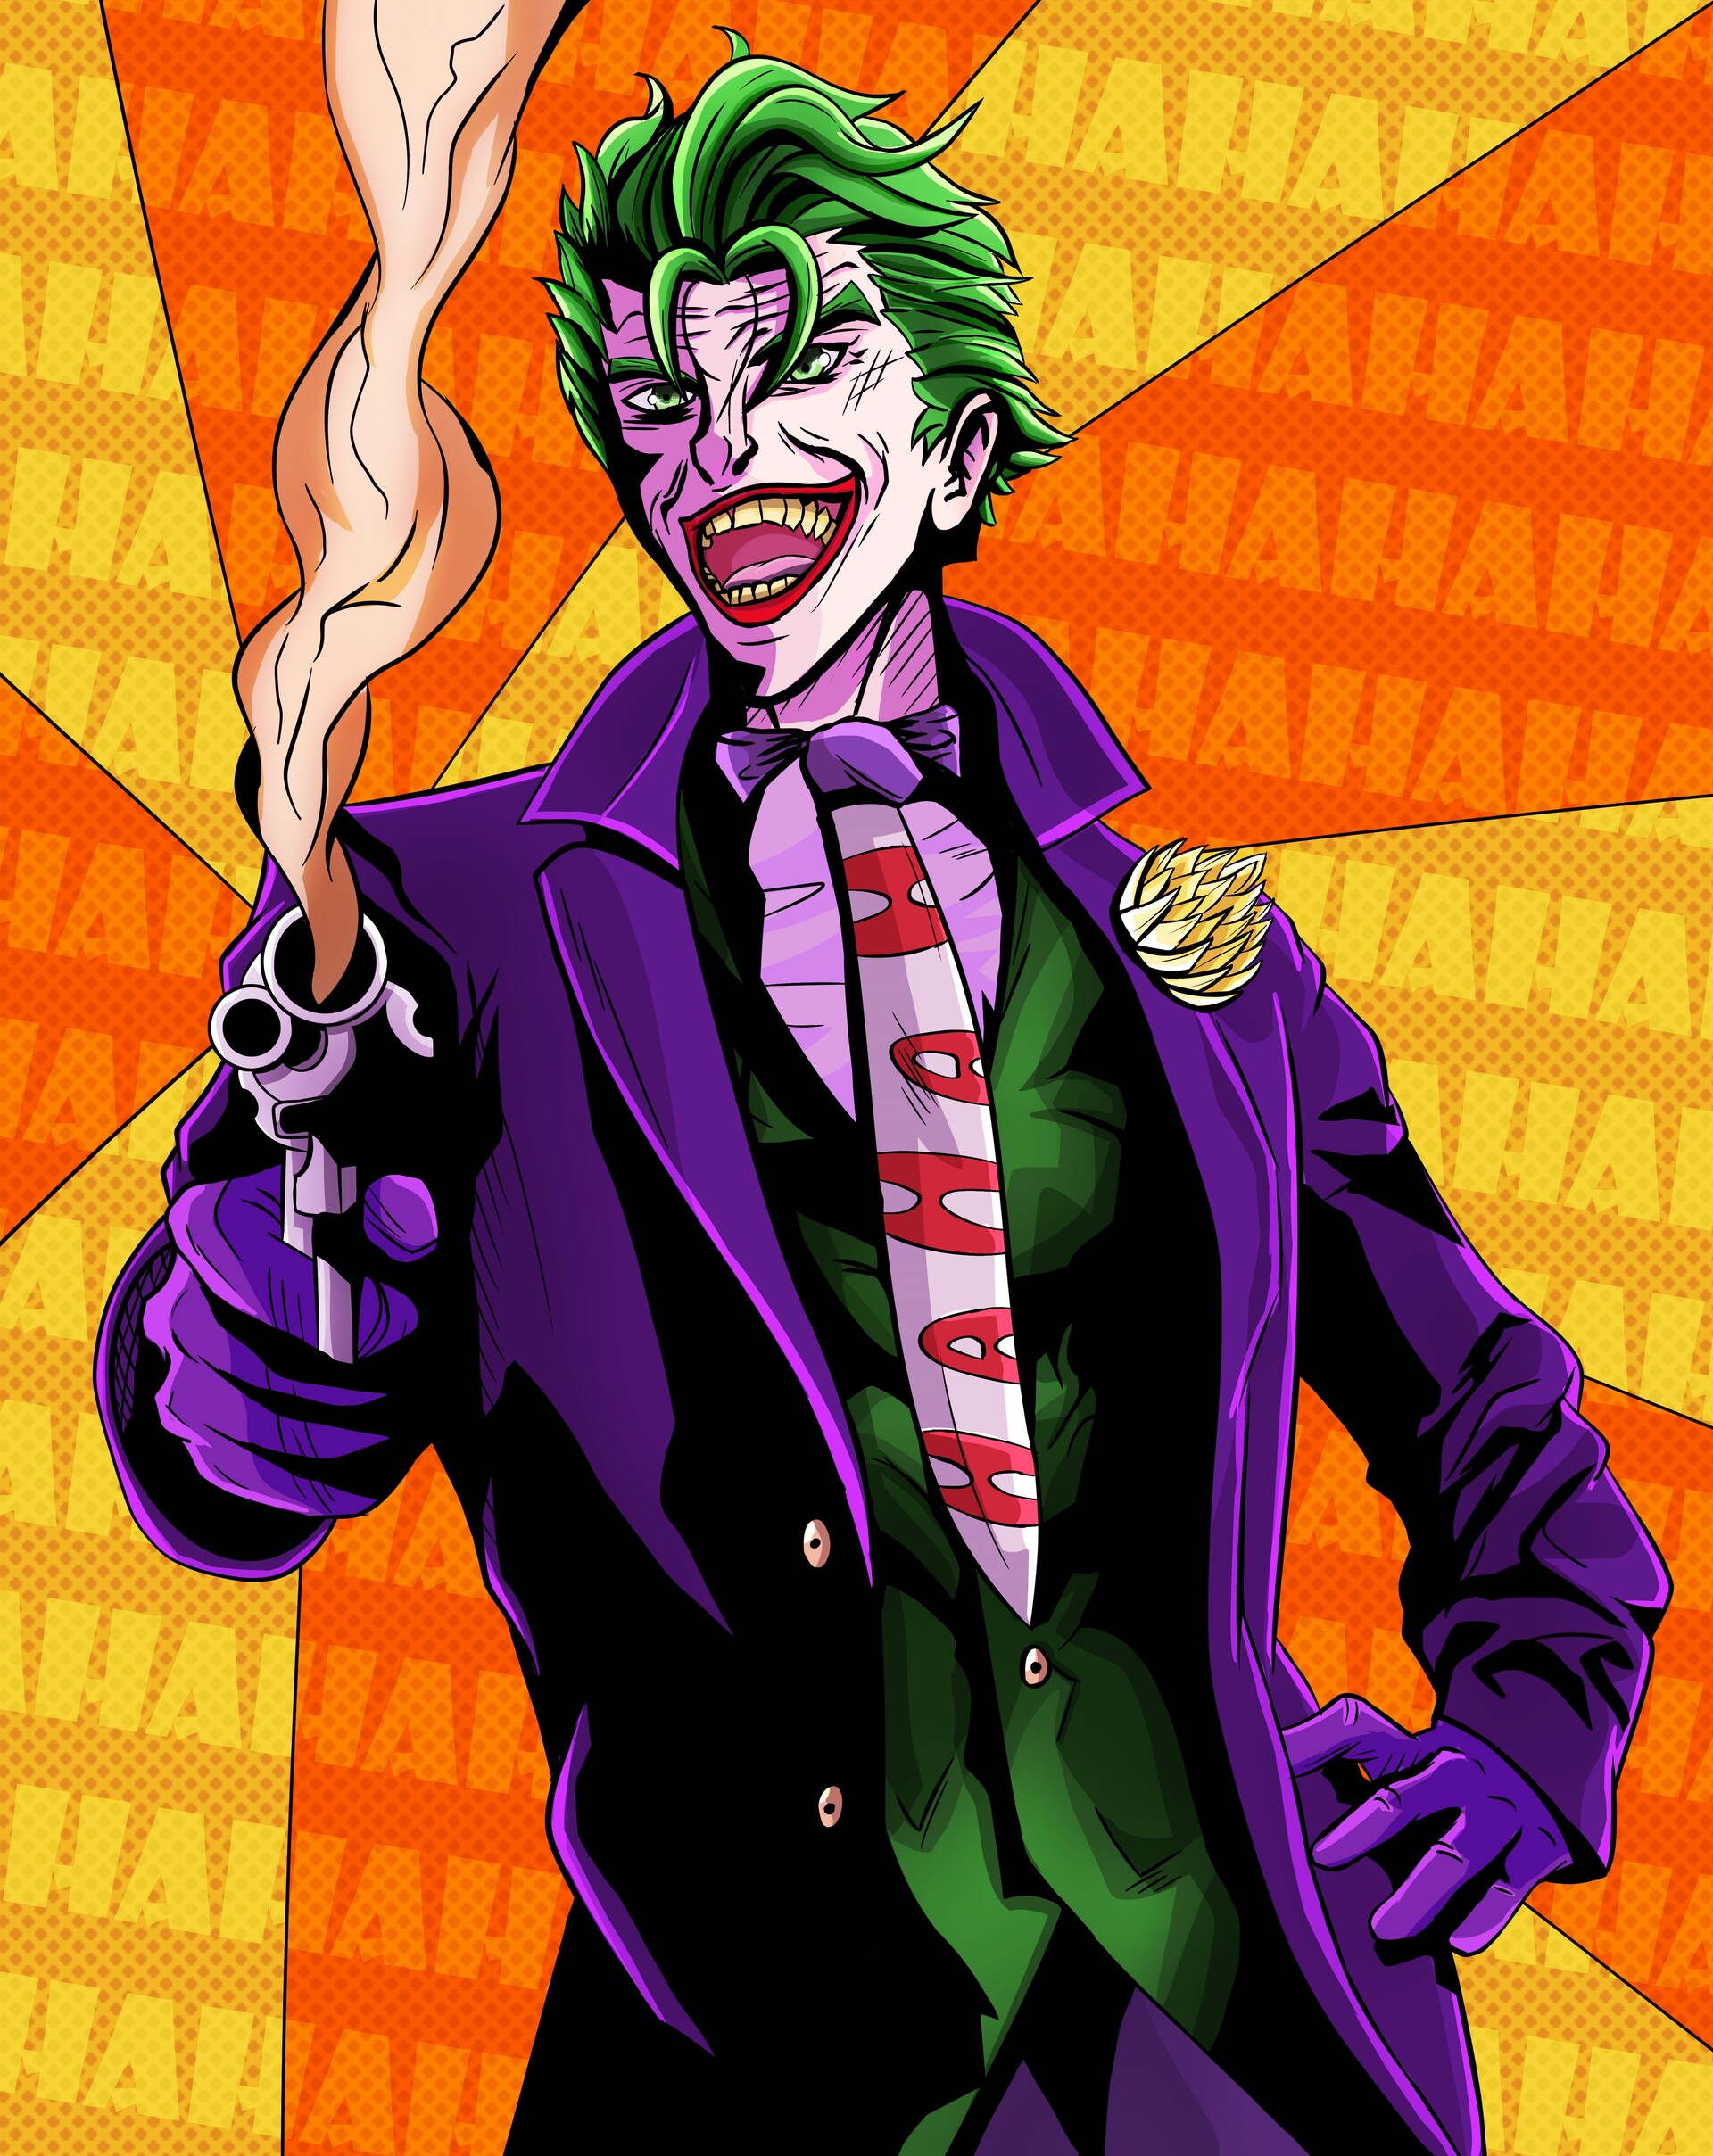 ArtStation - Joker fan art